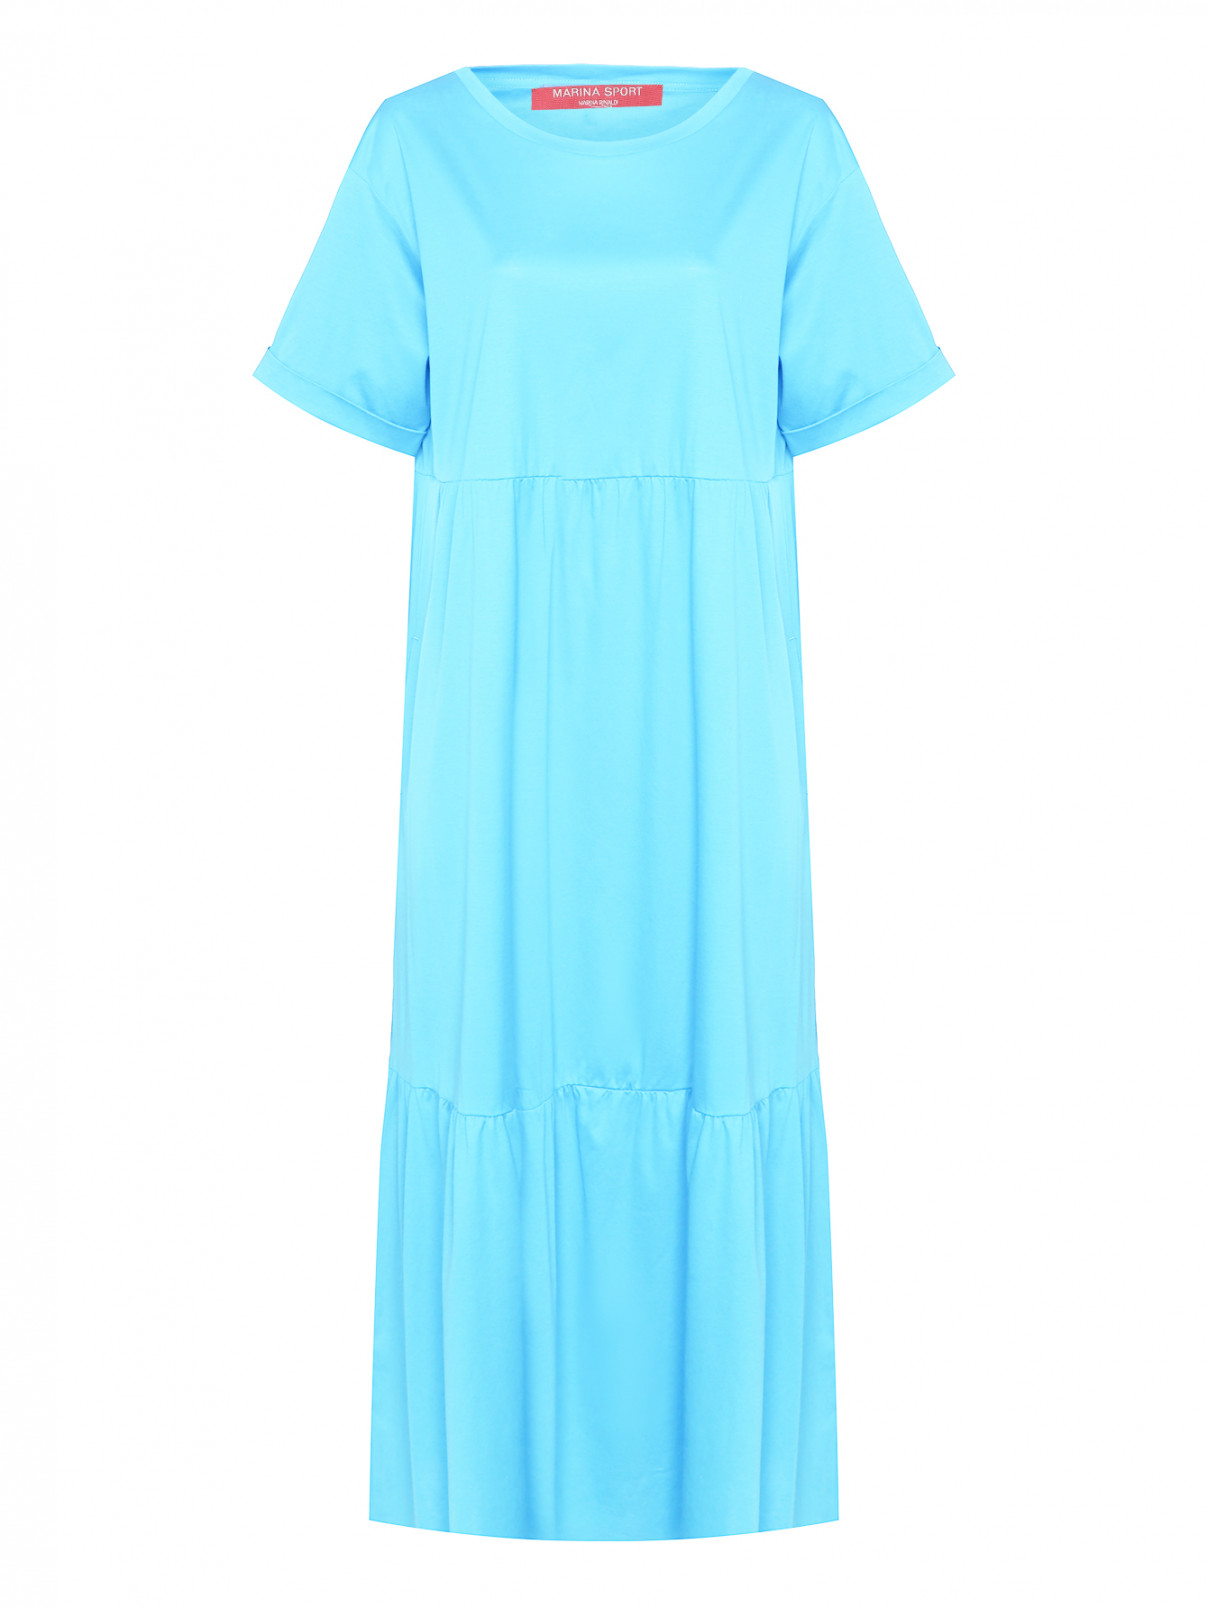 Трикотажное платье с карманами и завышенной талией Marina Rinaldi  –  Общий вид  – Цвет:  Синий